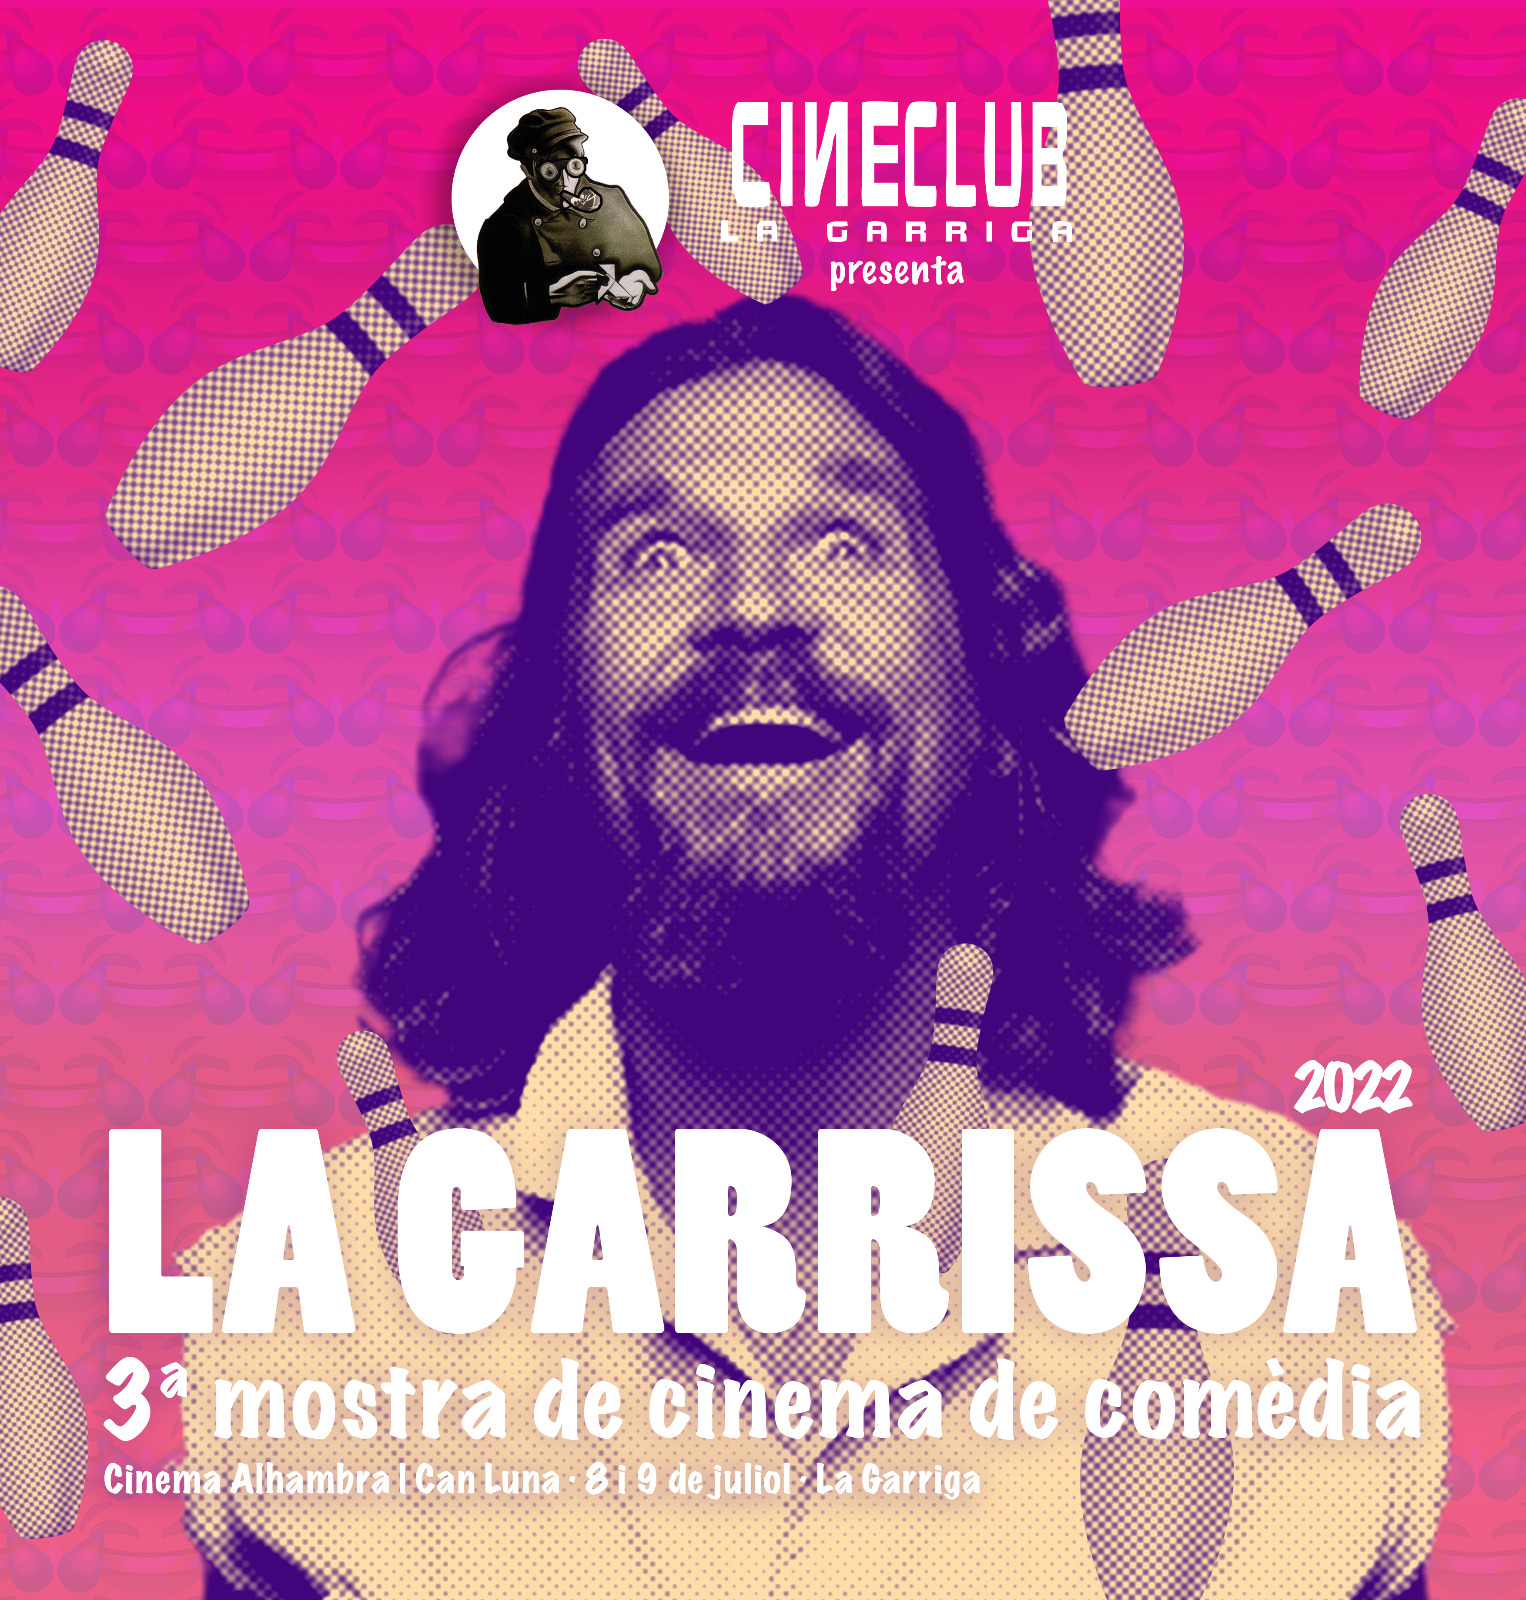 Cinema i riures al Festival La Garrissa